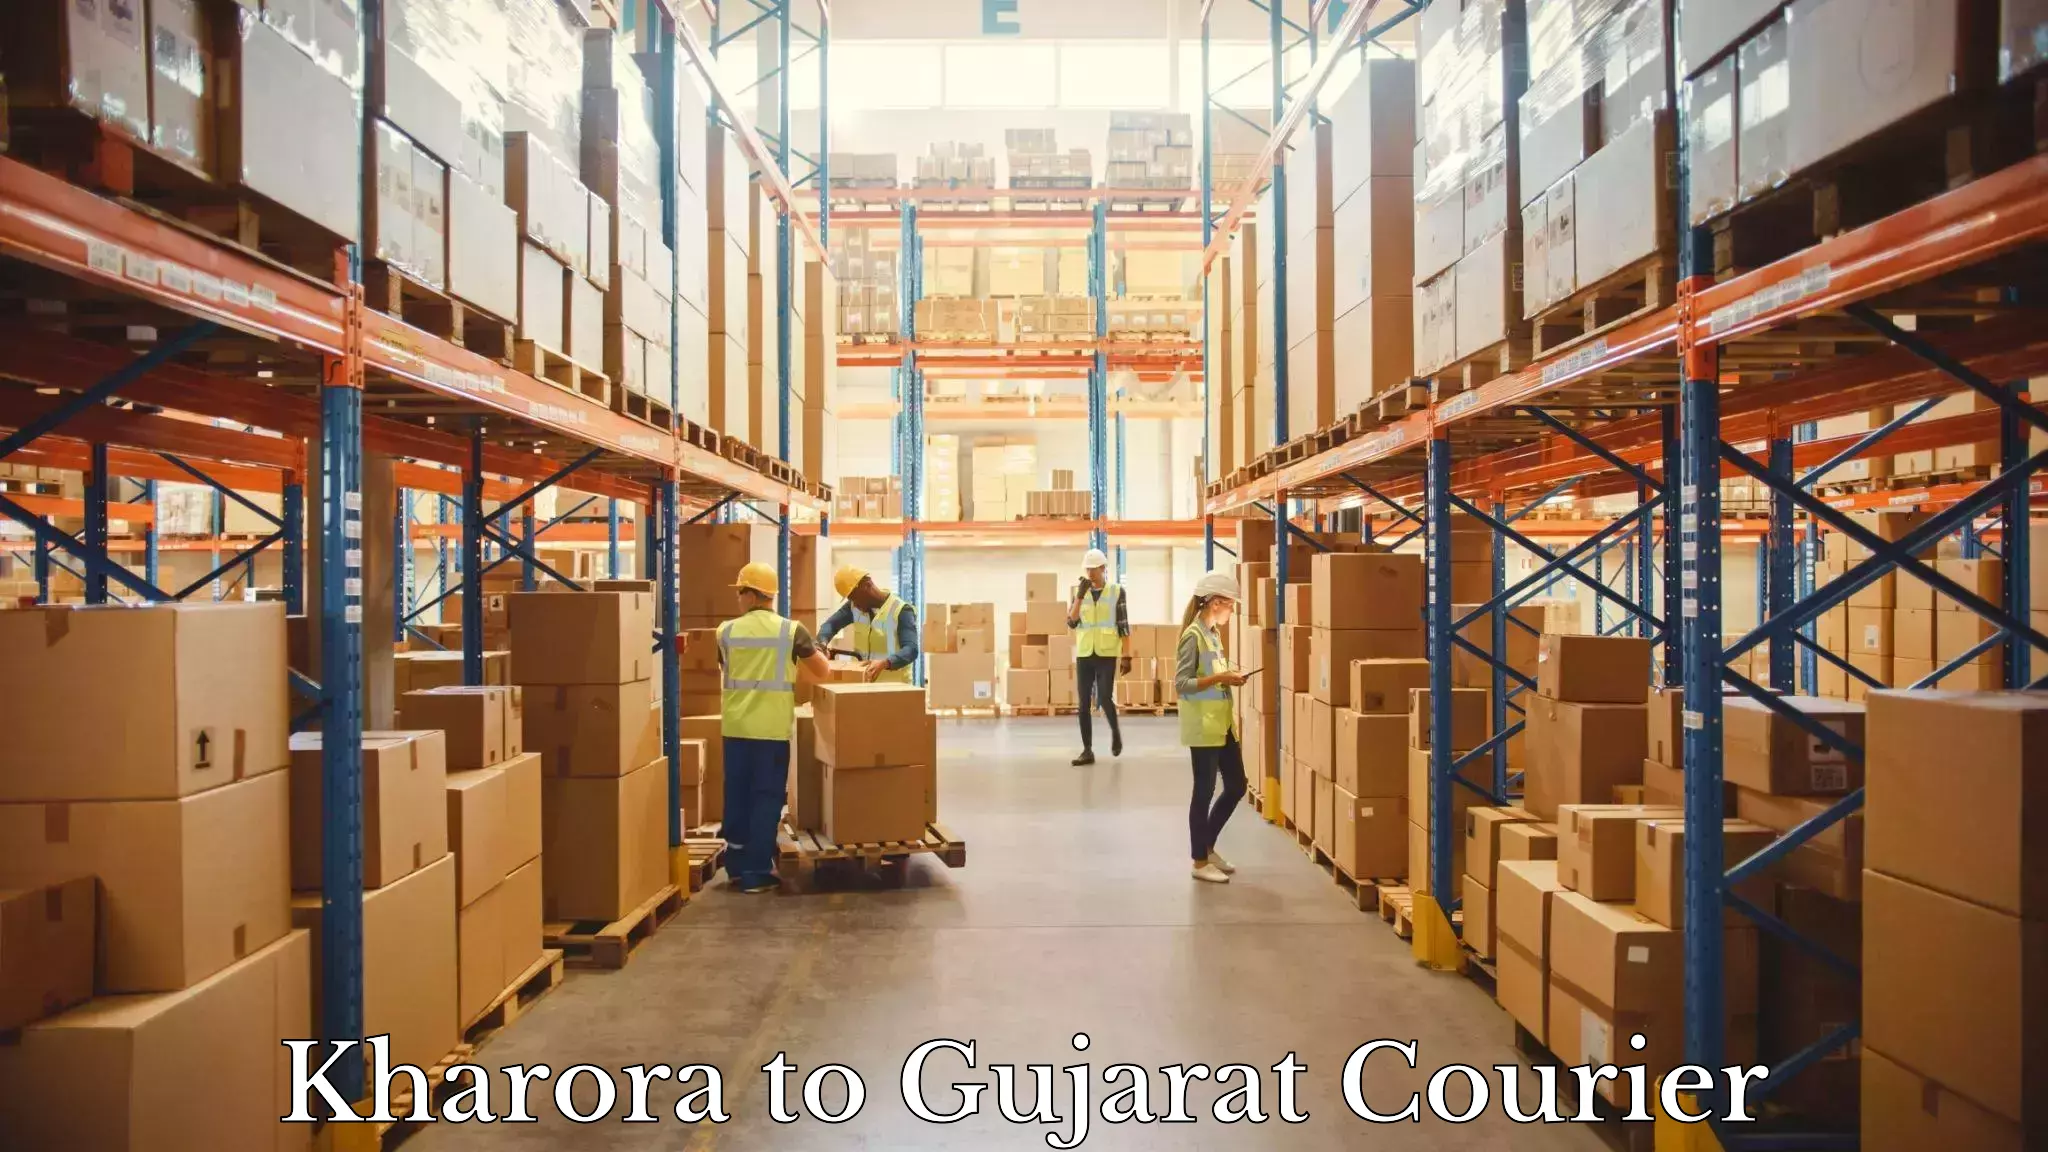 24/7 courier service Kharora to Manavadar